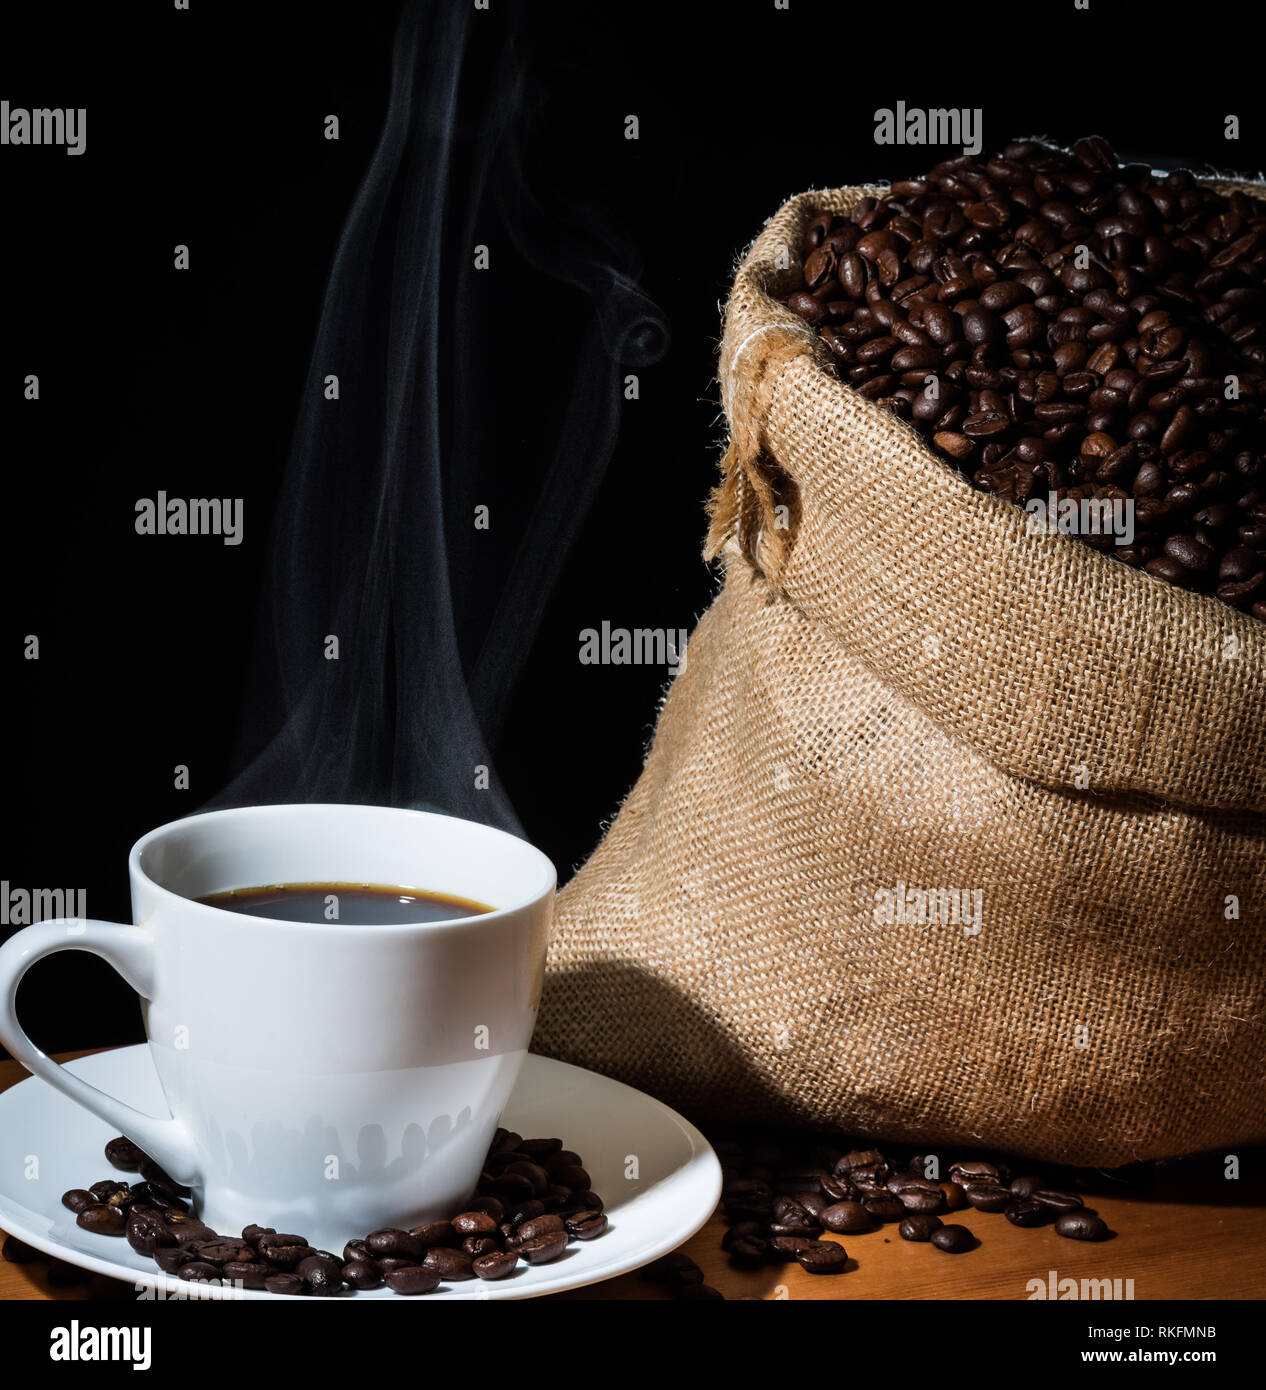 Café infusé dans une tasse blanche avec de la vapeur ou de la vapeur et les grains de café dans une toile de jute sac en toile de jute et les haricots éparpillés sur une surface en bois. Banque D'Images